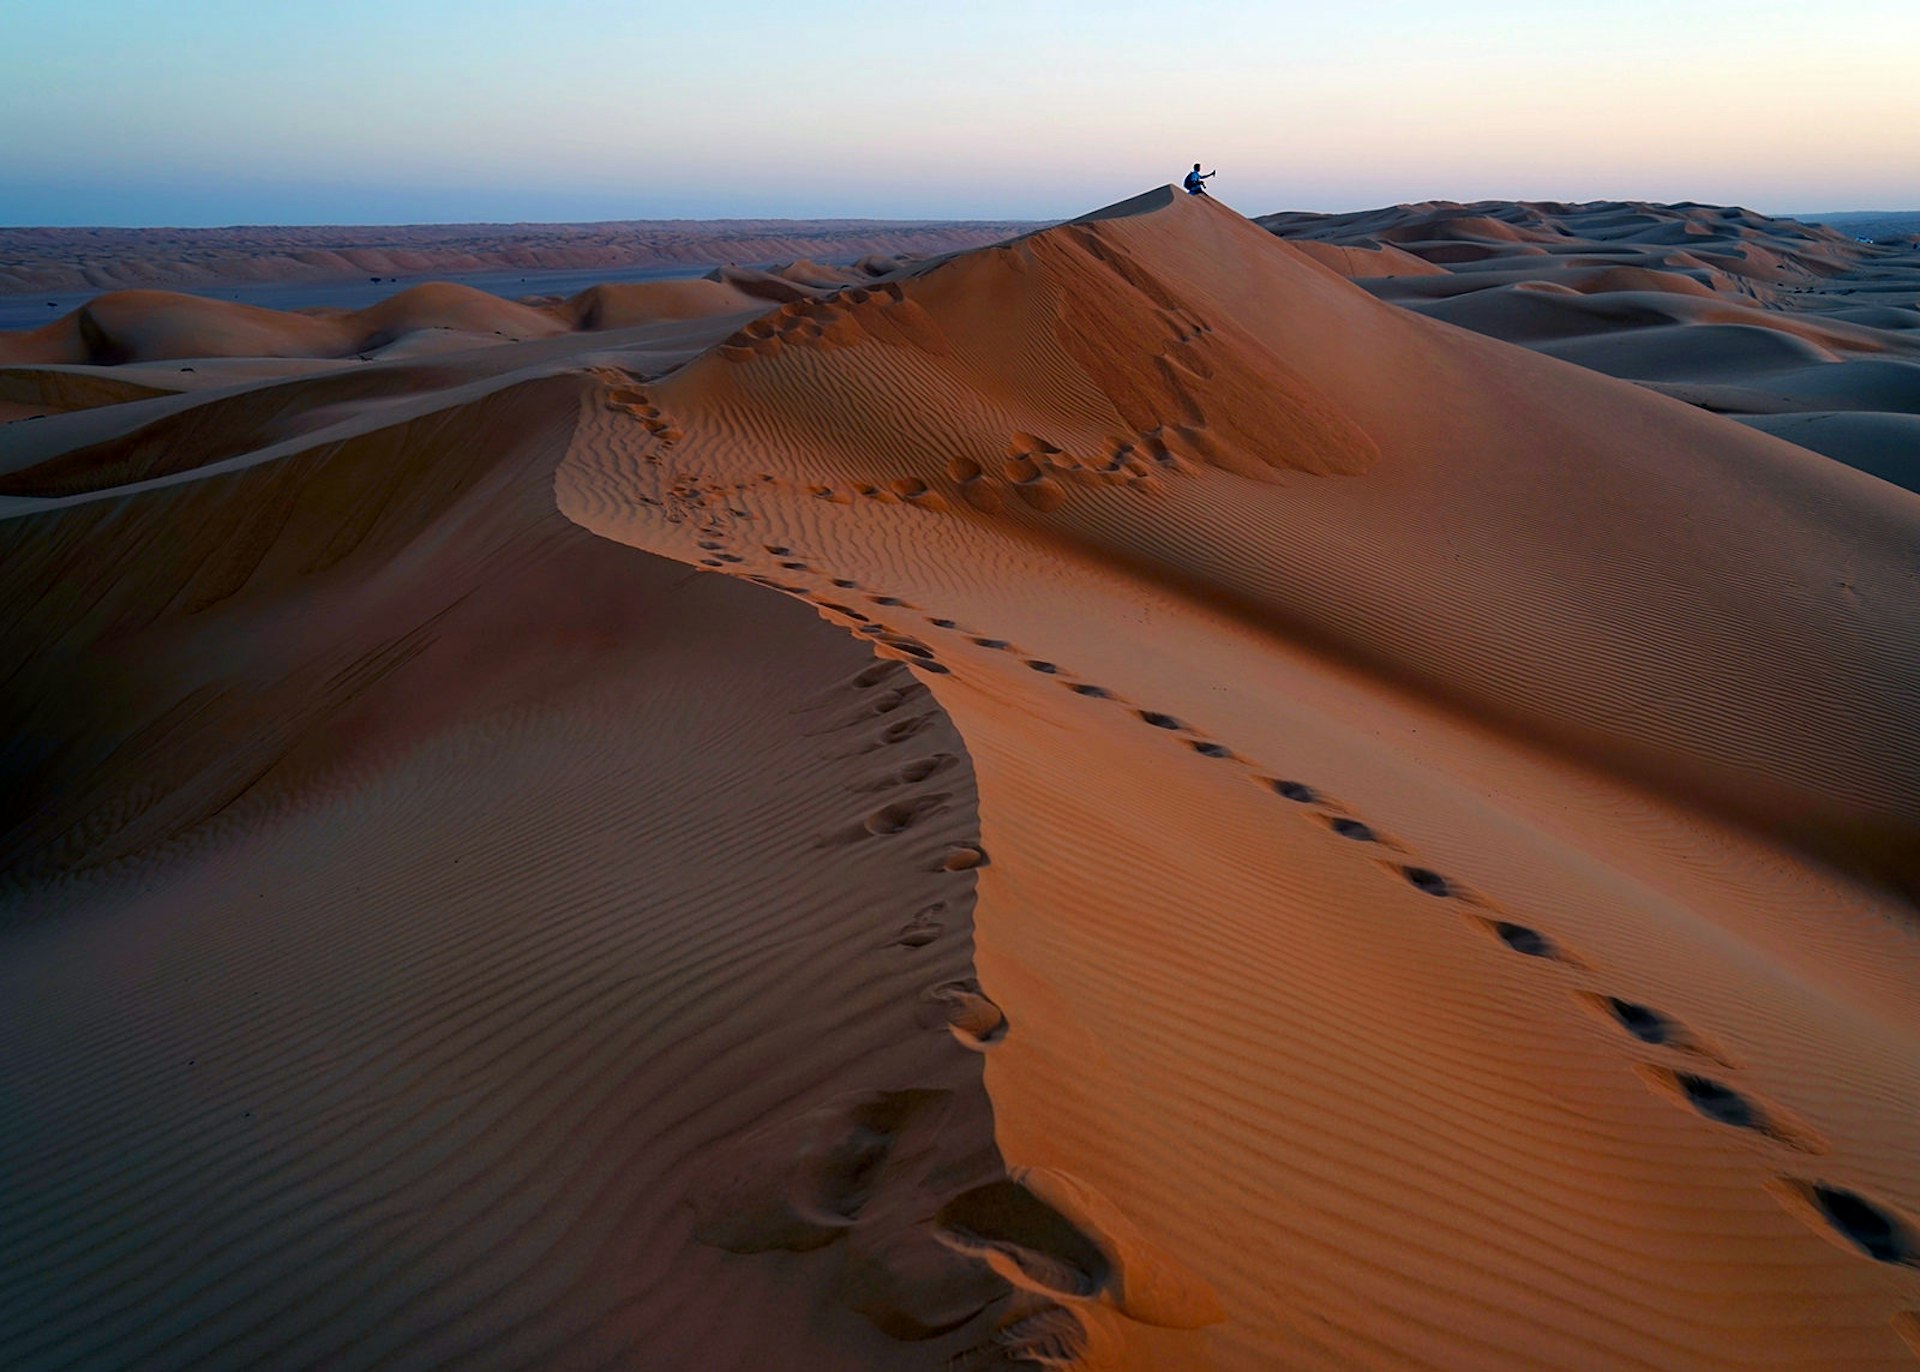 Dunes at Sharqiya Sands, Oman © James Kay / Lonely Planet